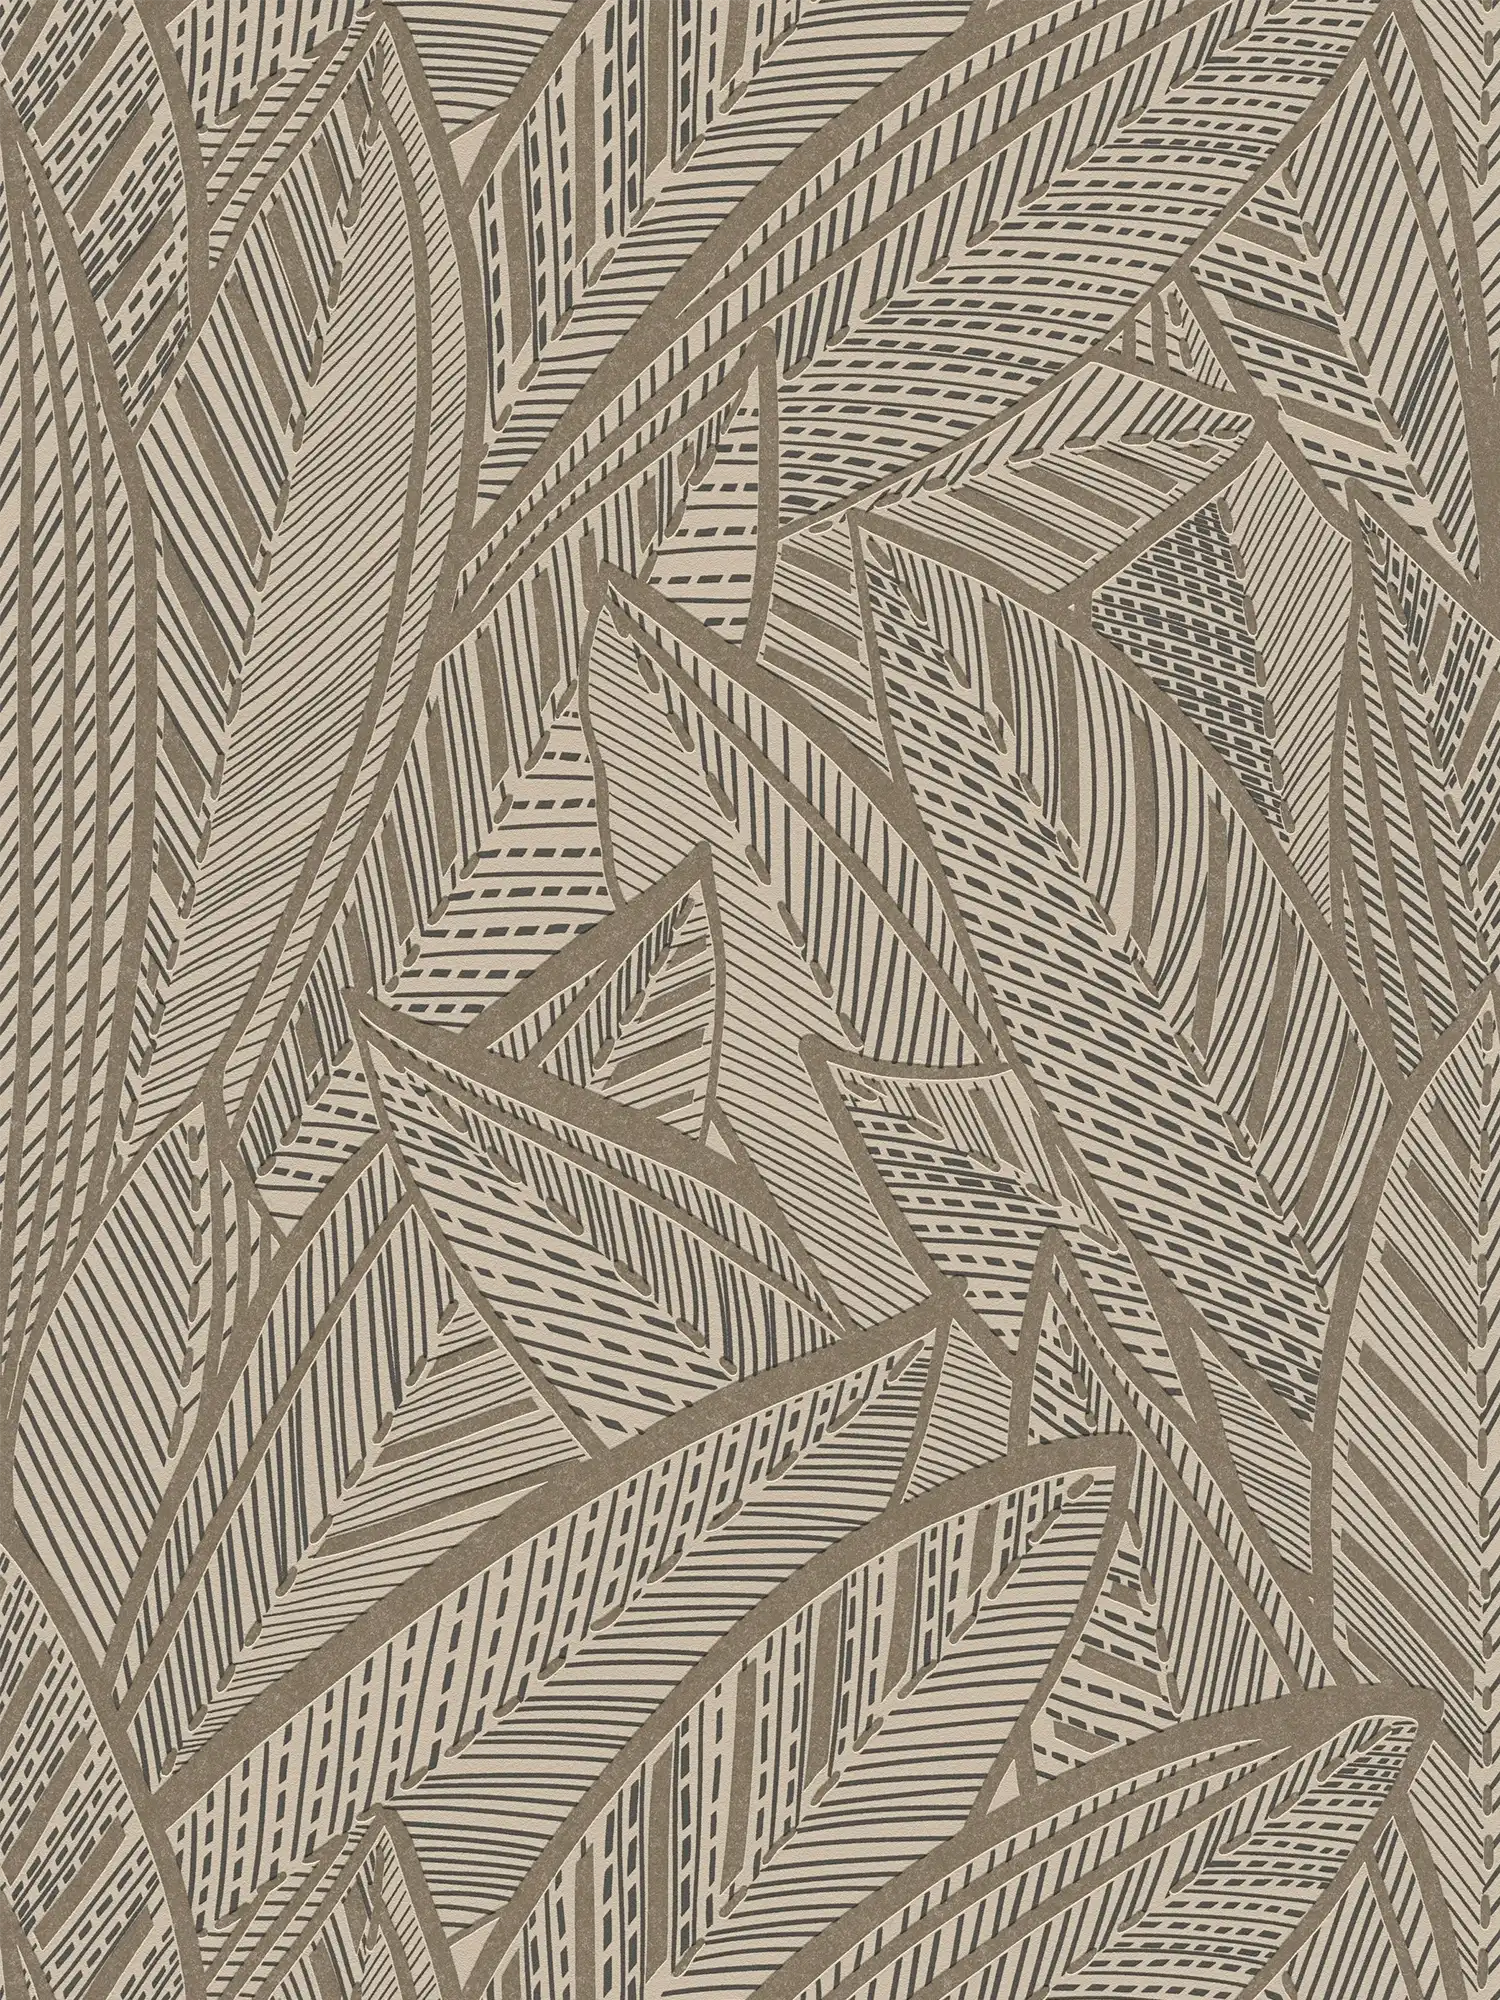 Jungle vliesbehang met palmbladeren en lichtglanseffecten - metallic, zwart
